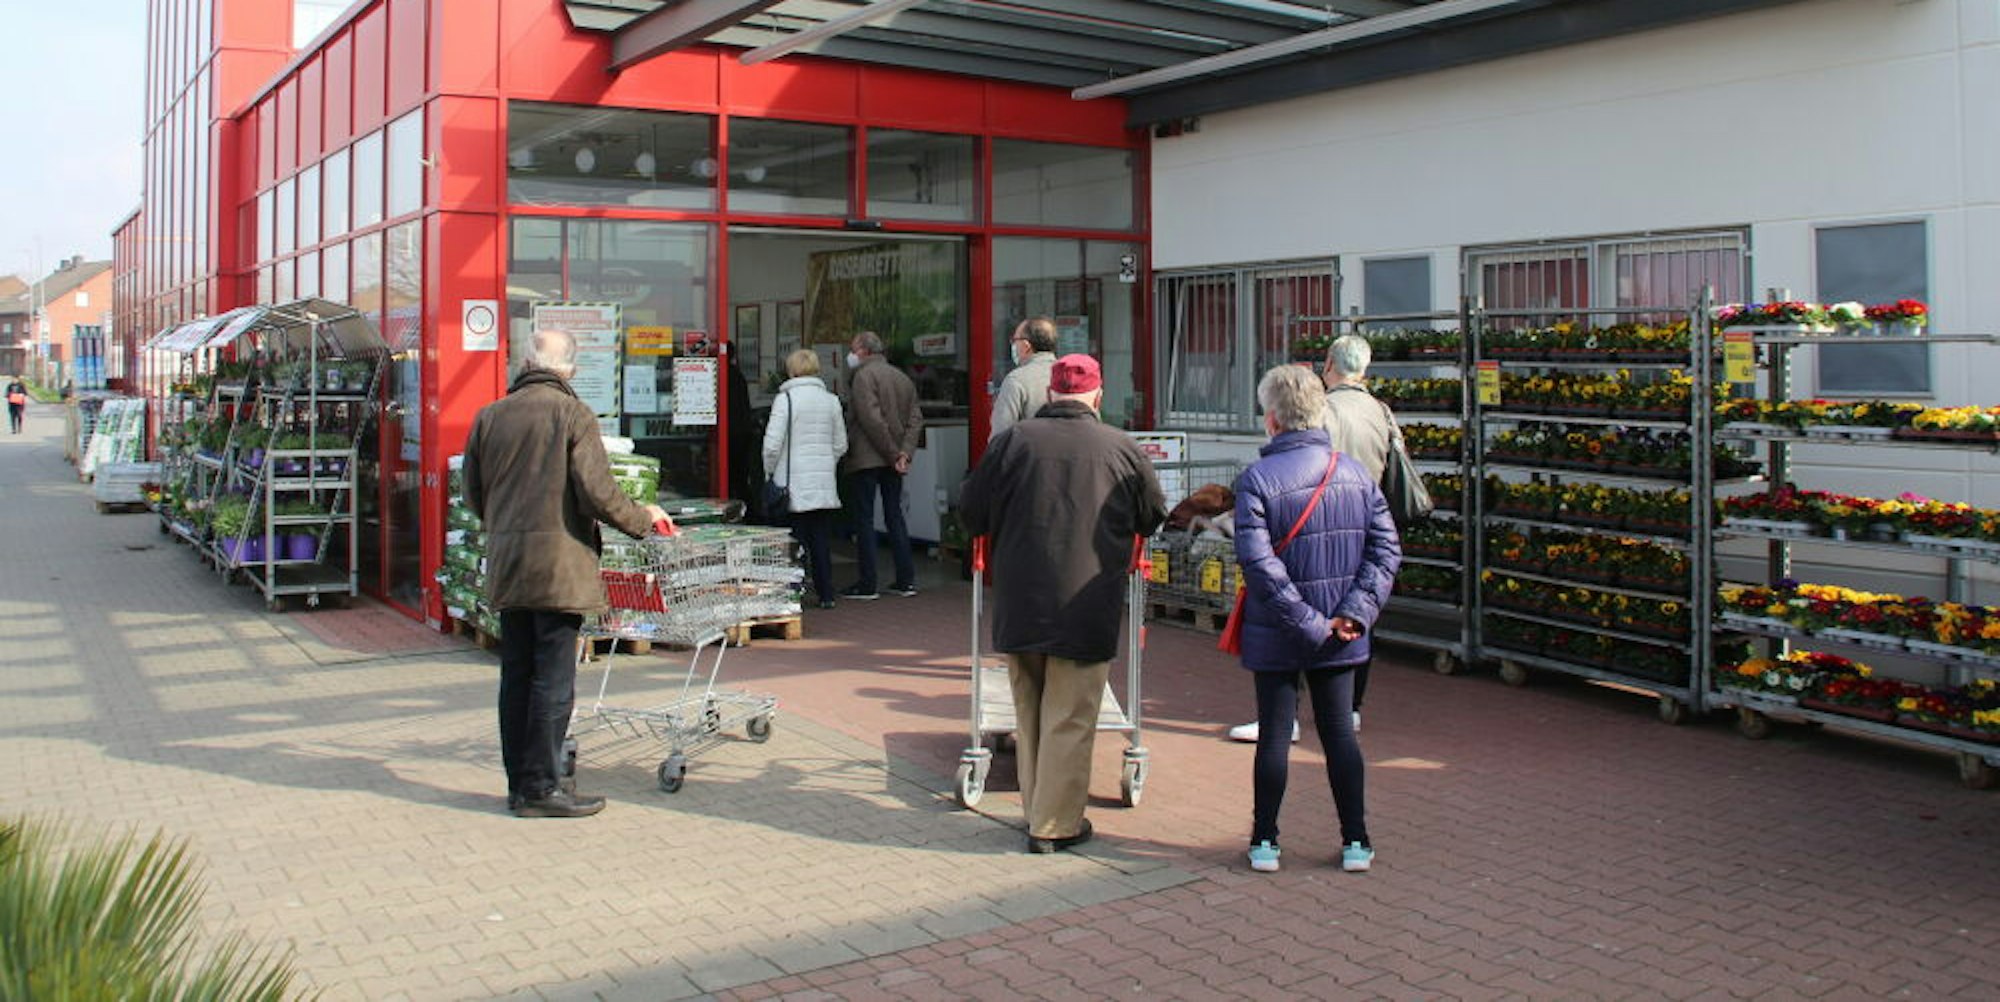 Am Toom-Baumarkt in Bergheim bildete sich am Freitag eine lange Warteschlange vor dem Eingang.